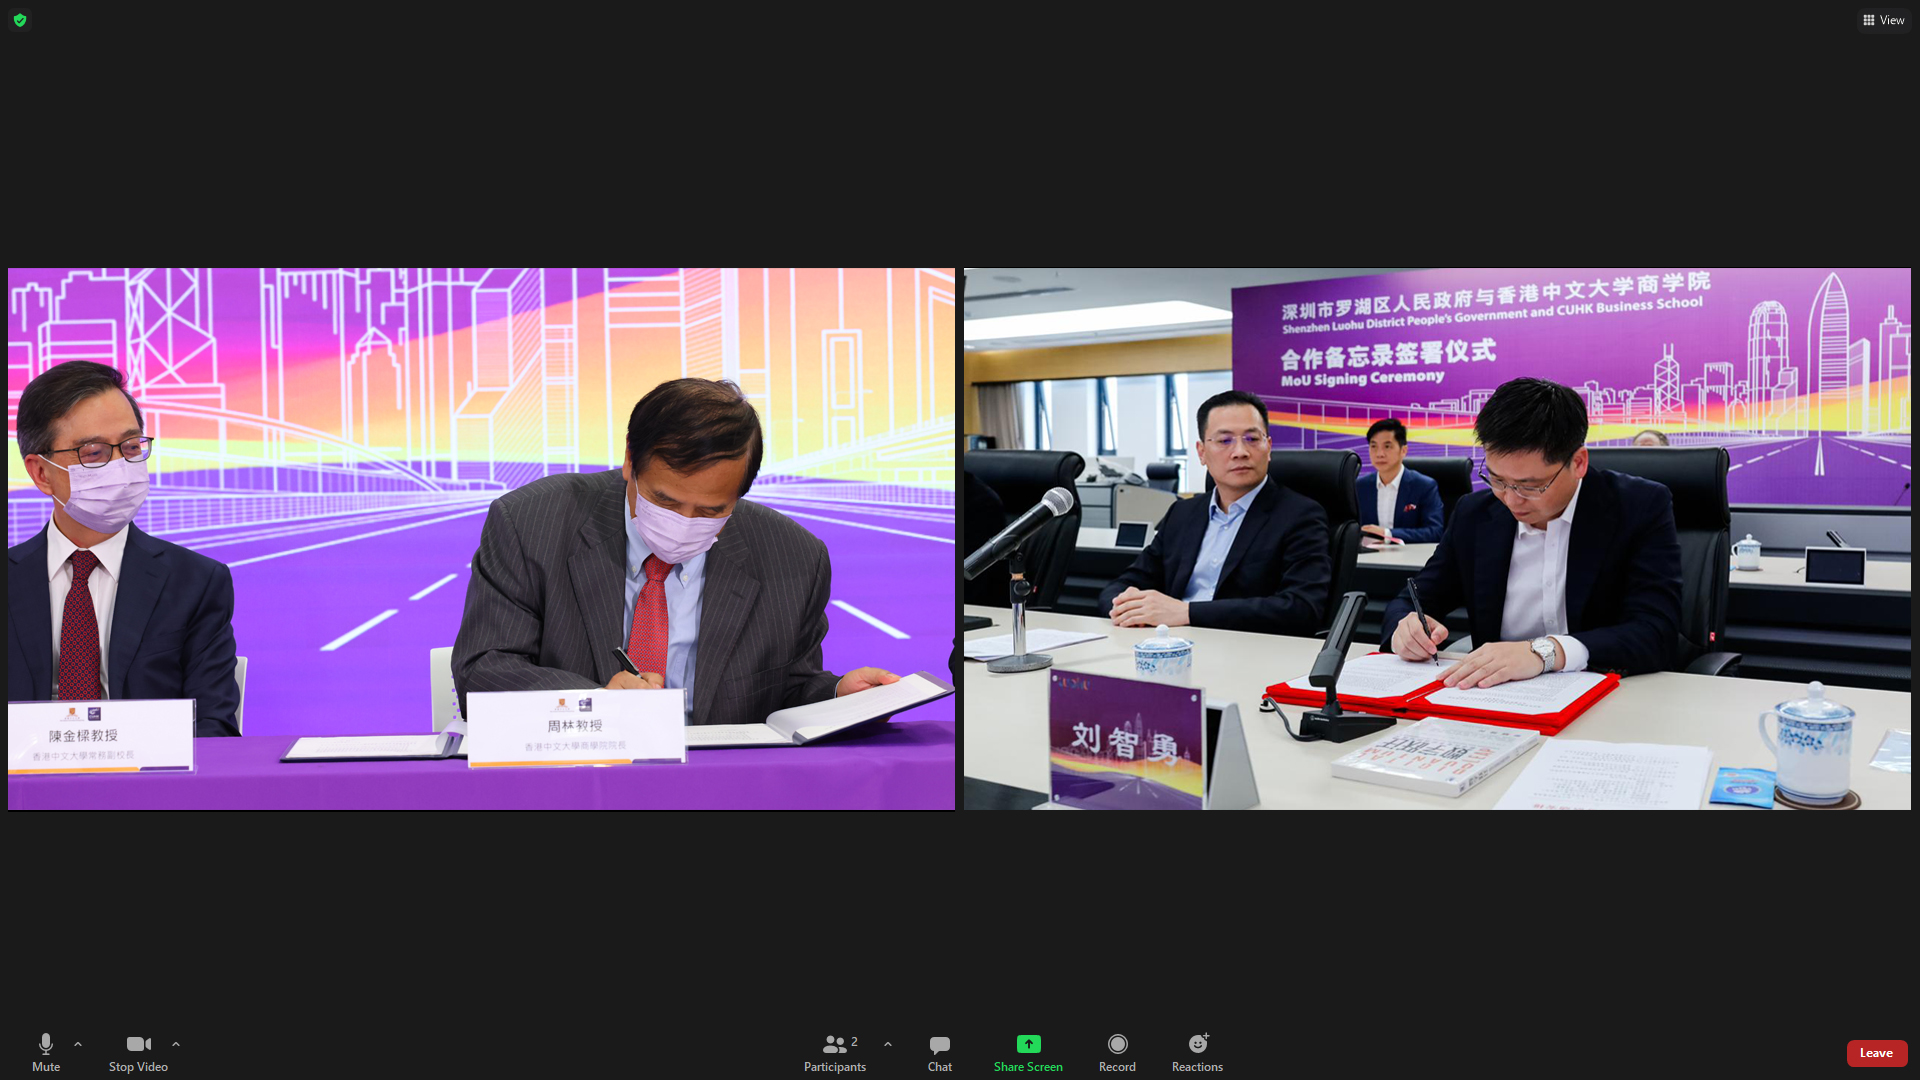 【教育頻道 熱點新聞】香港中文大學商學院與深圳市羅湖區人民政府簽署合作備忘錄